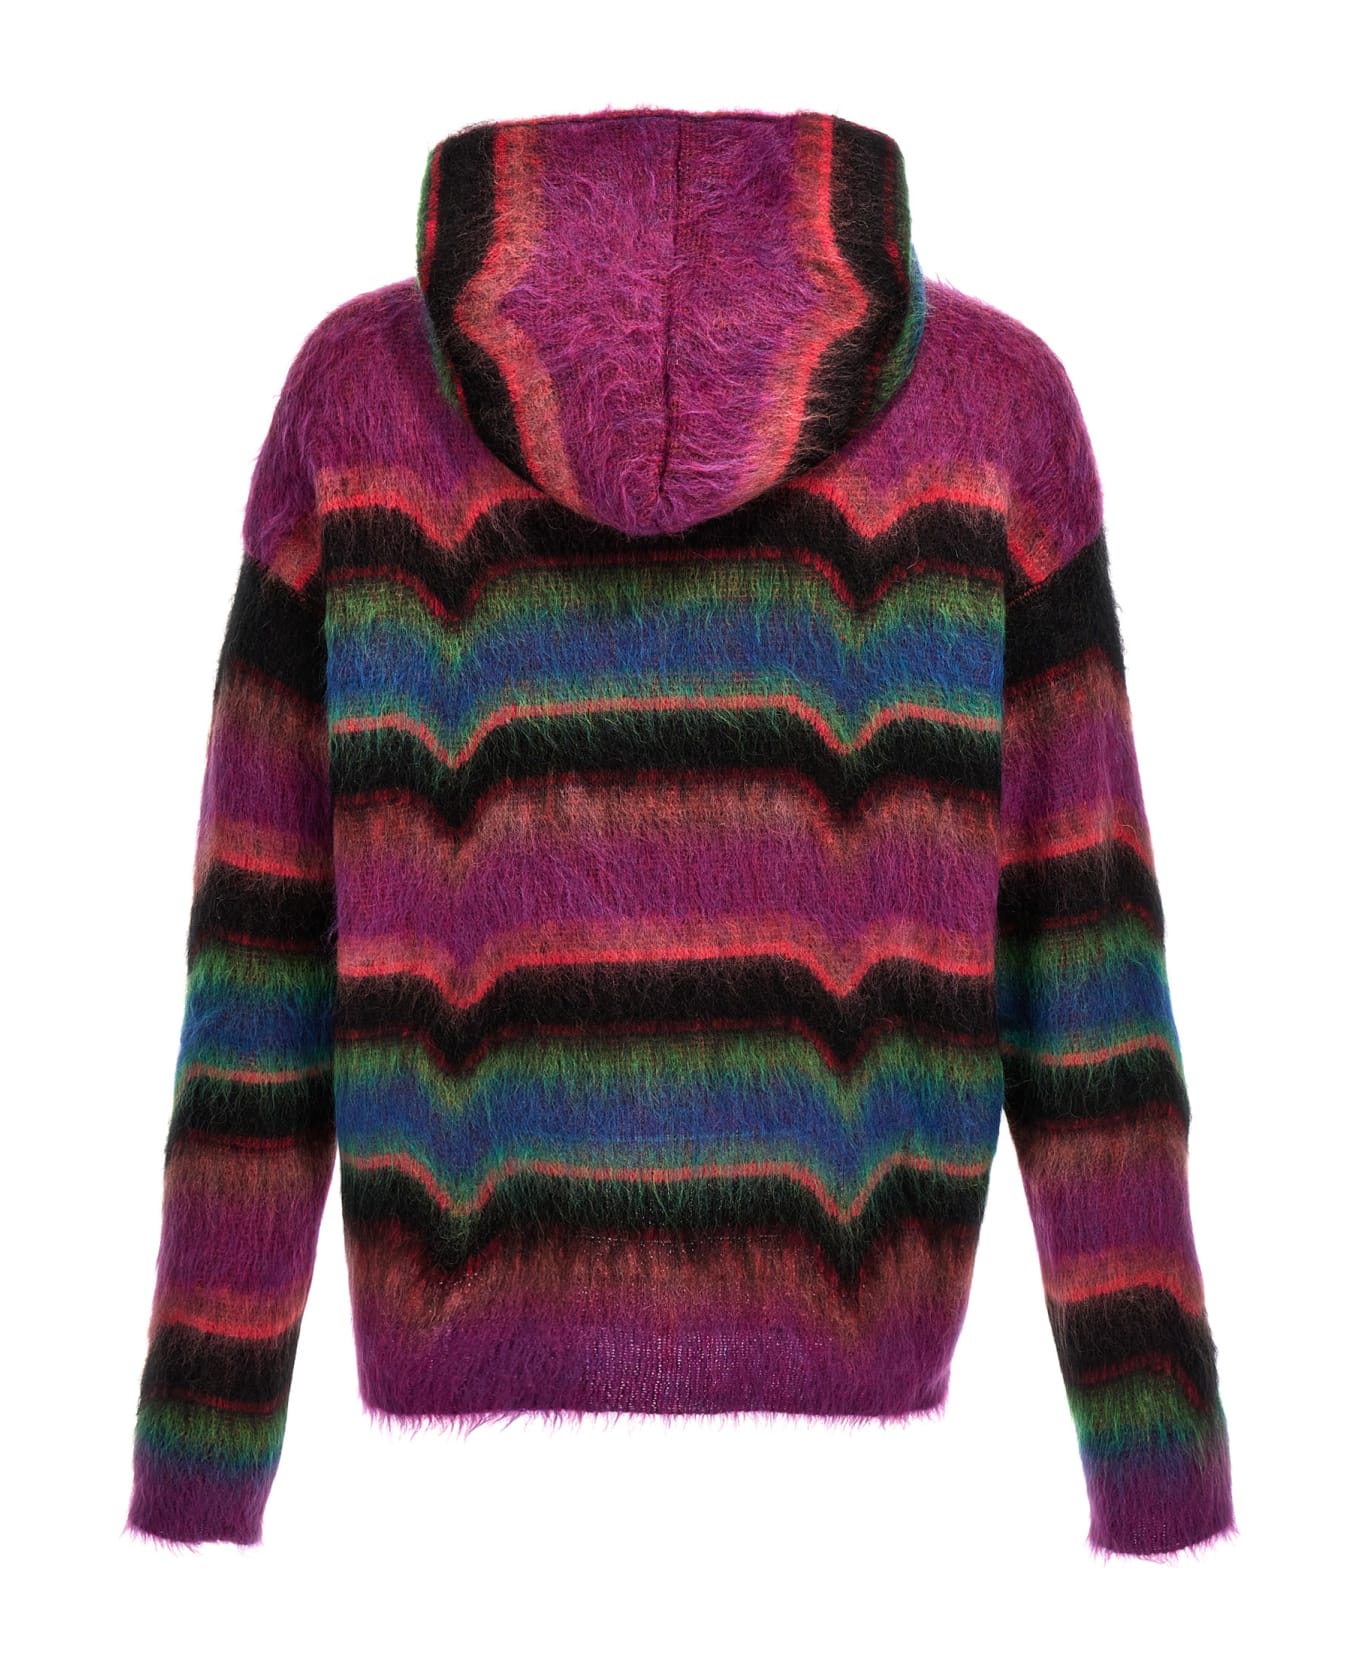 Avril8790 'skateboard' Hooded Sweater - Multicolor ニットウェア